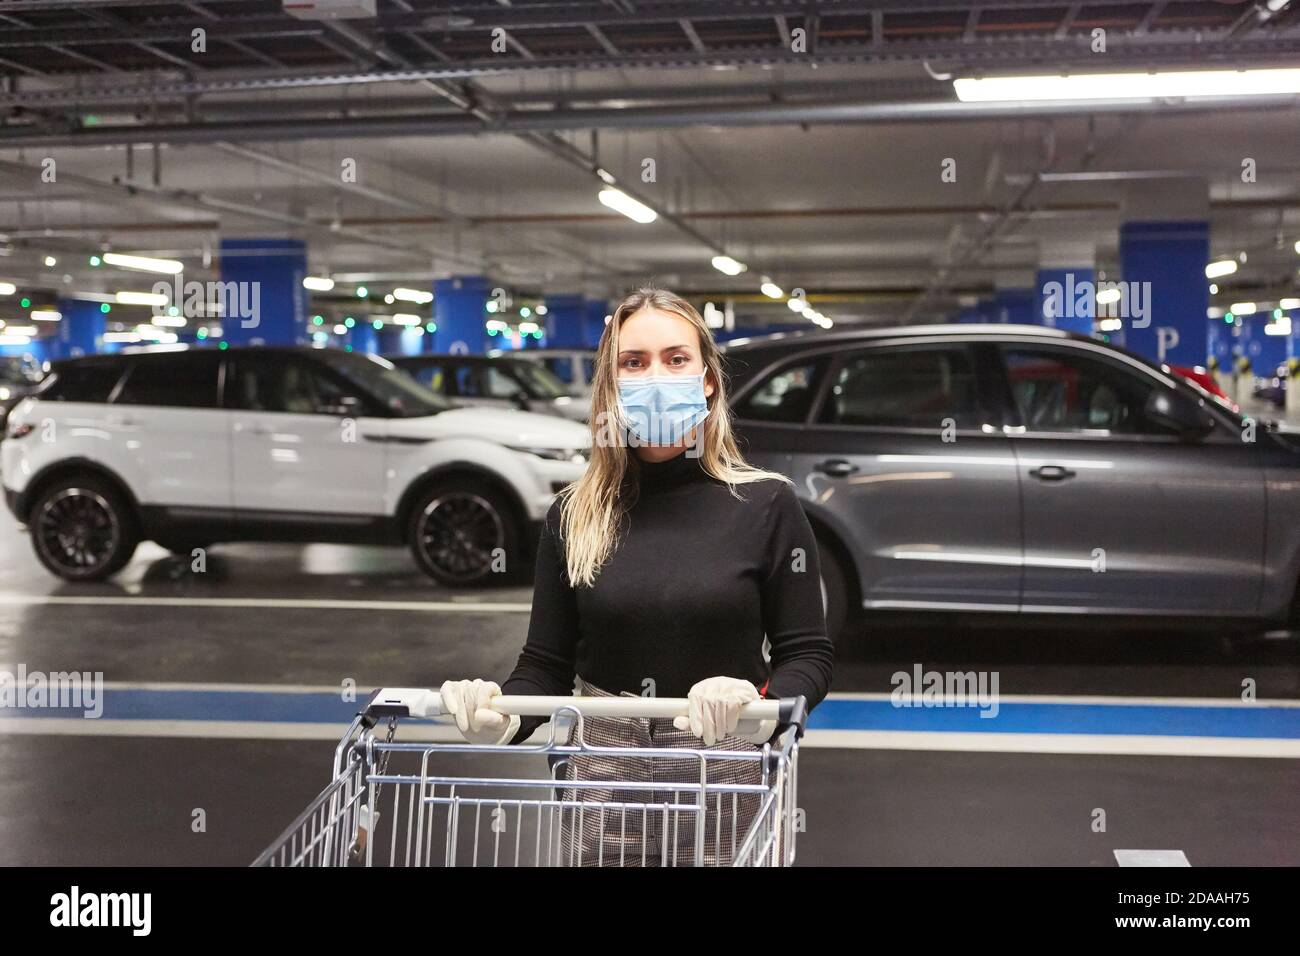 Femme en tant que client avec masque en raison de la pandémie Covid-19 avec un tramway dans le parking souterrain Banque D'Images